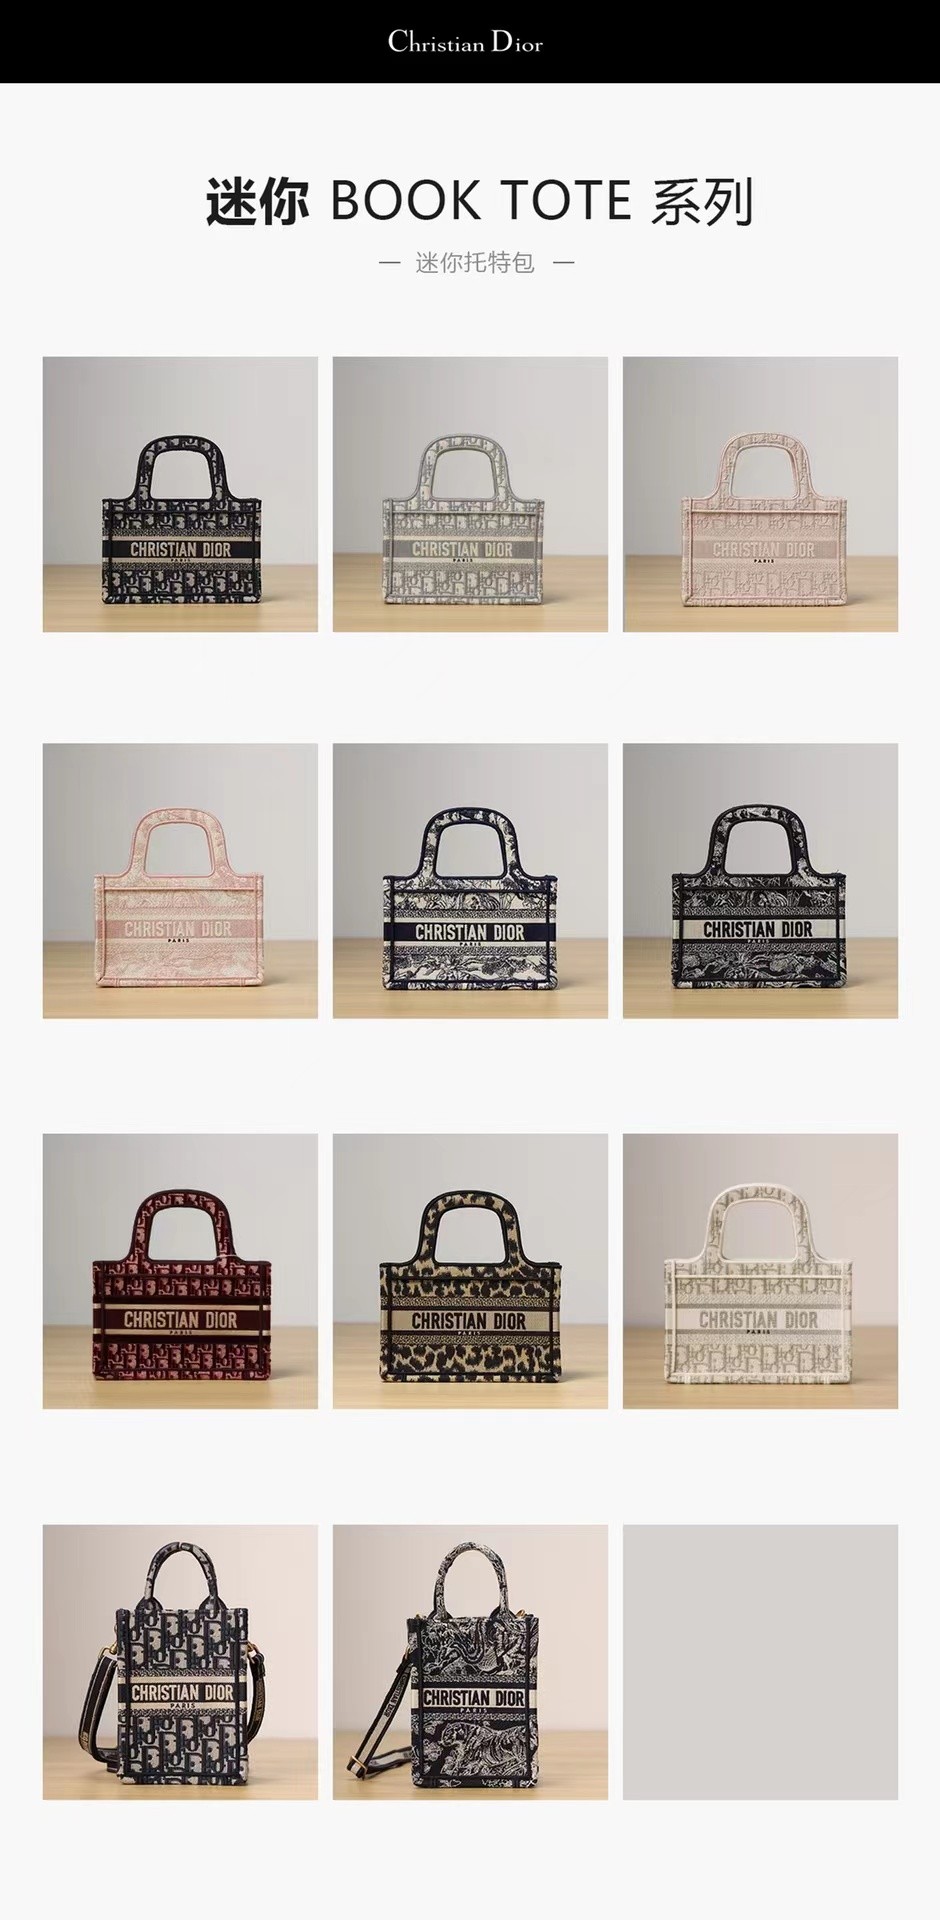 Shebag best-seller——Dior meilleures répliques de sacs de qualité （2022 mis à jour） -Boutique en ligne de faux sacs Louis Vuitton de meilleure qualité, réplique de sac de designer ru